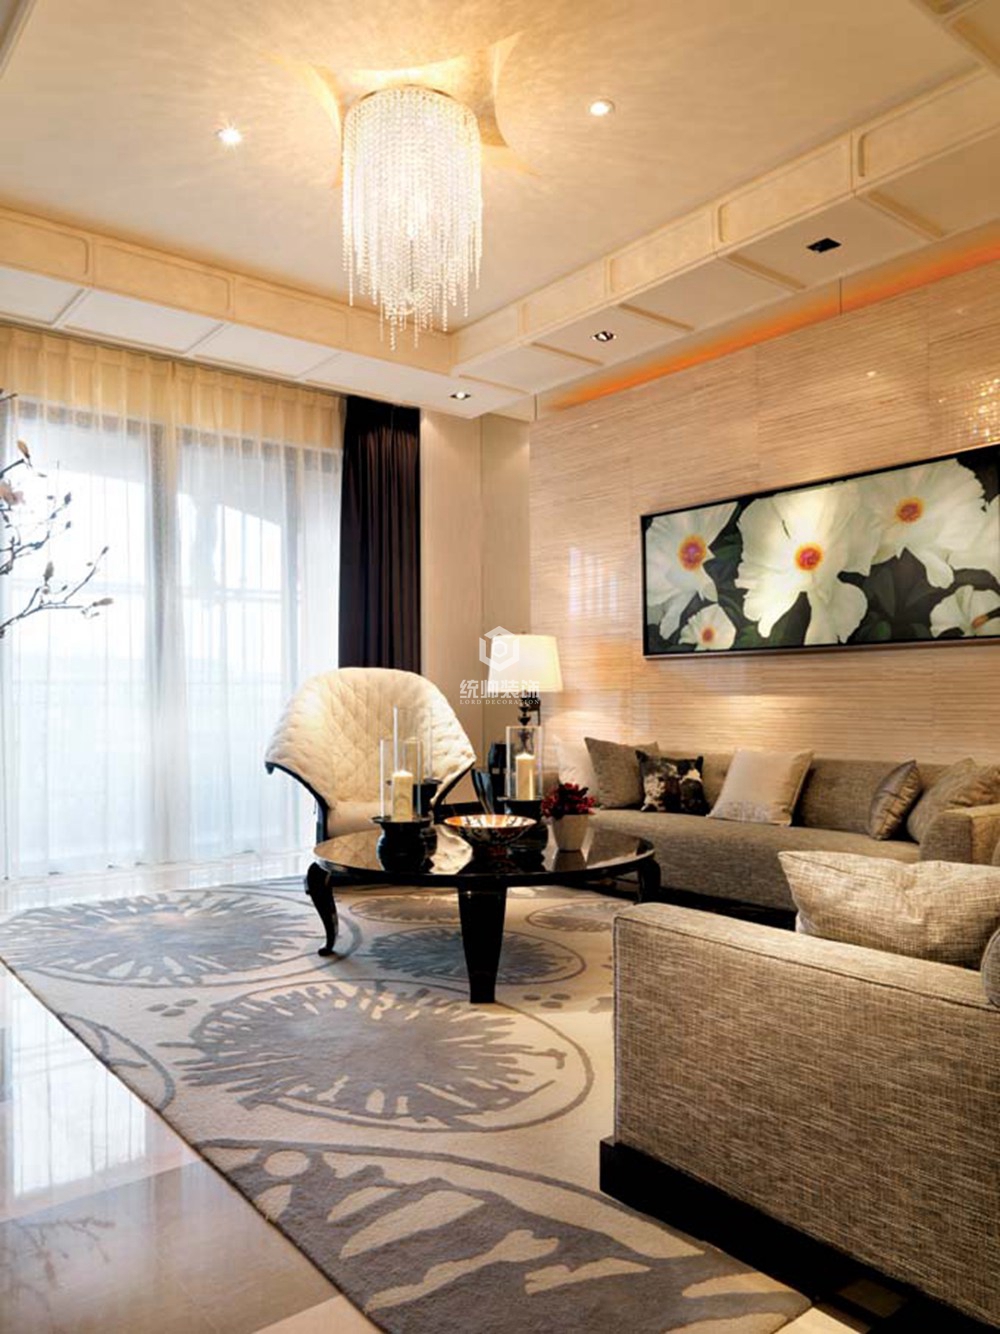 嘉定区通用国际260平方新古典风格别墅客厅装修效果图